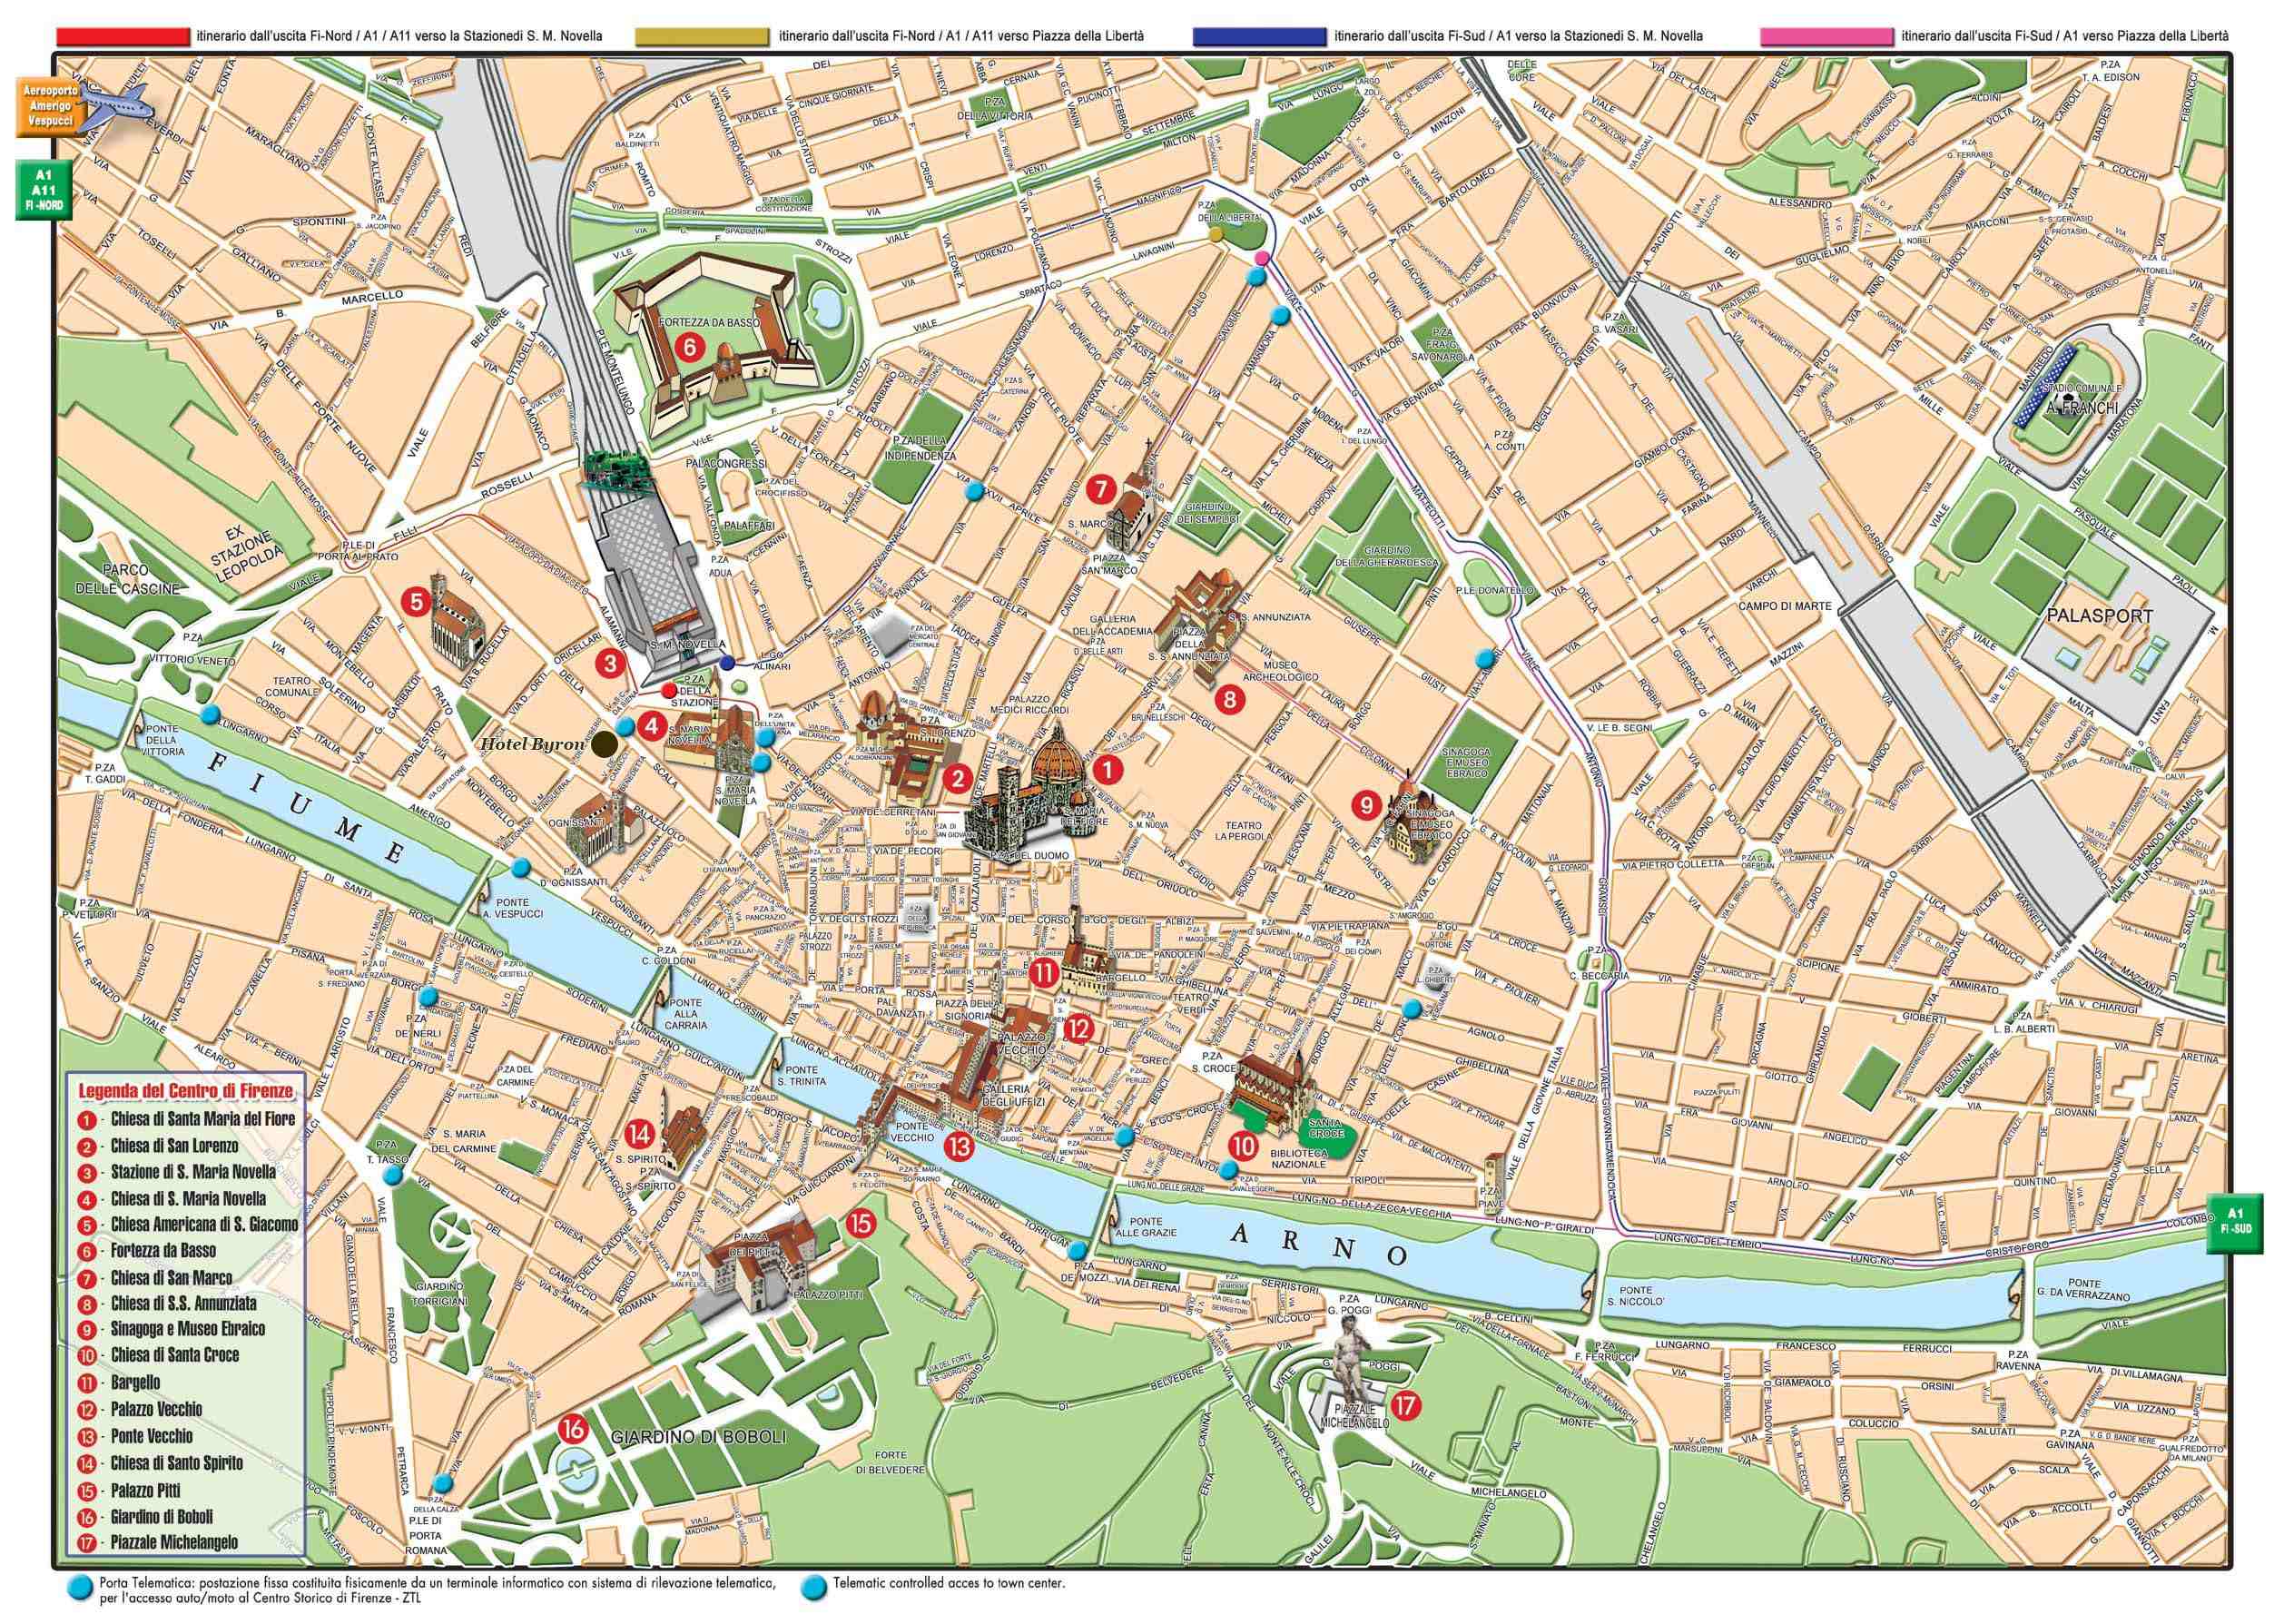 Mapa, plano y callejero de Florencia